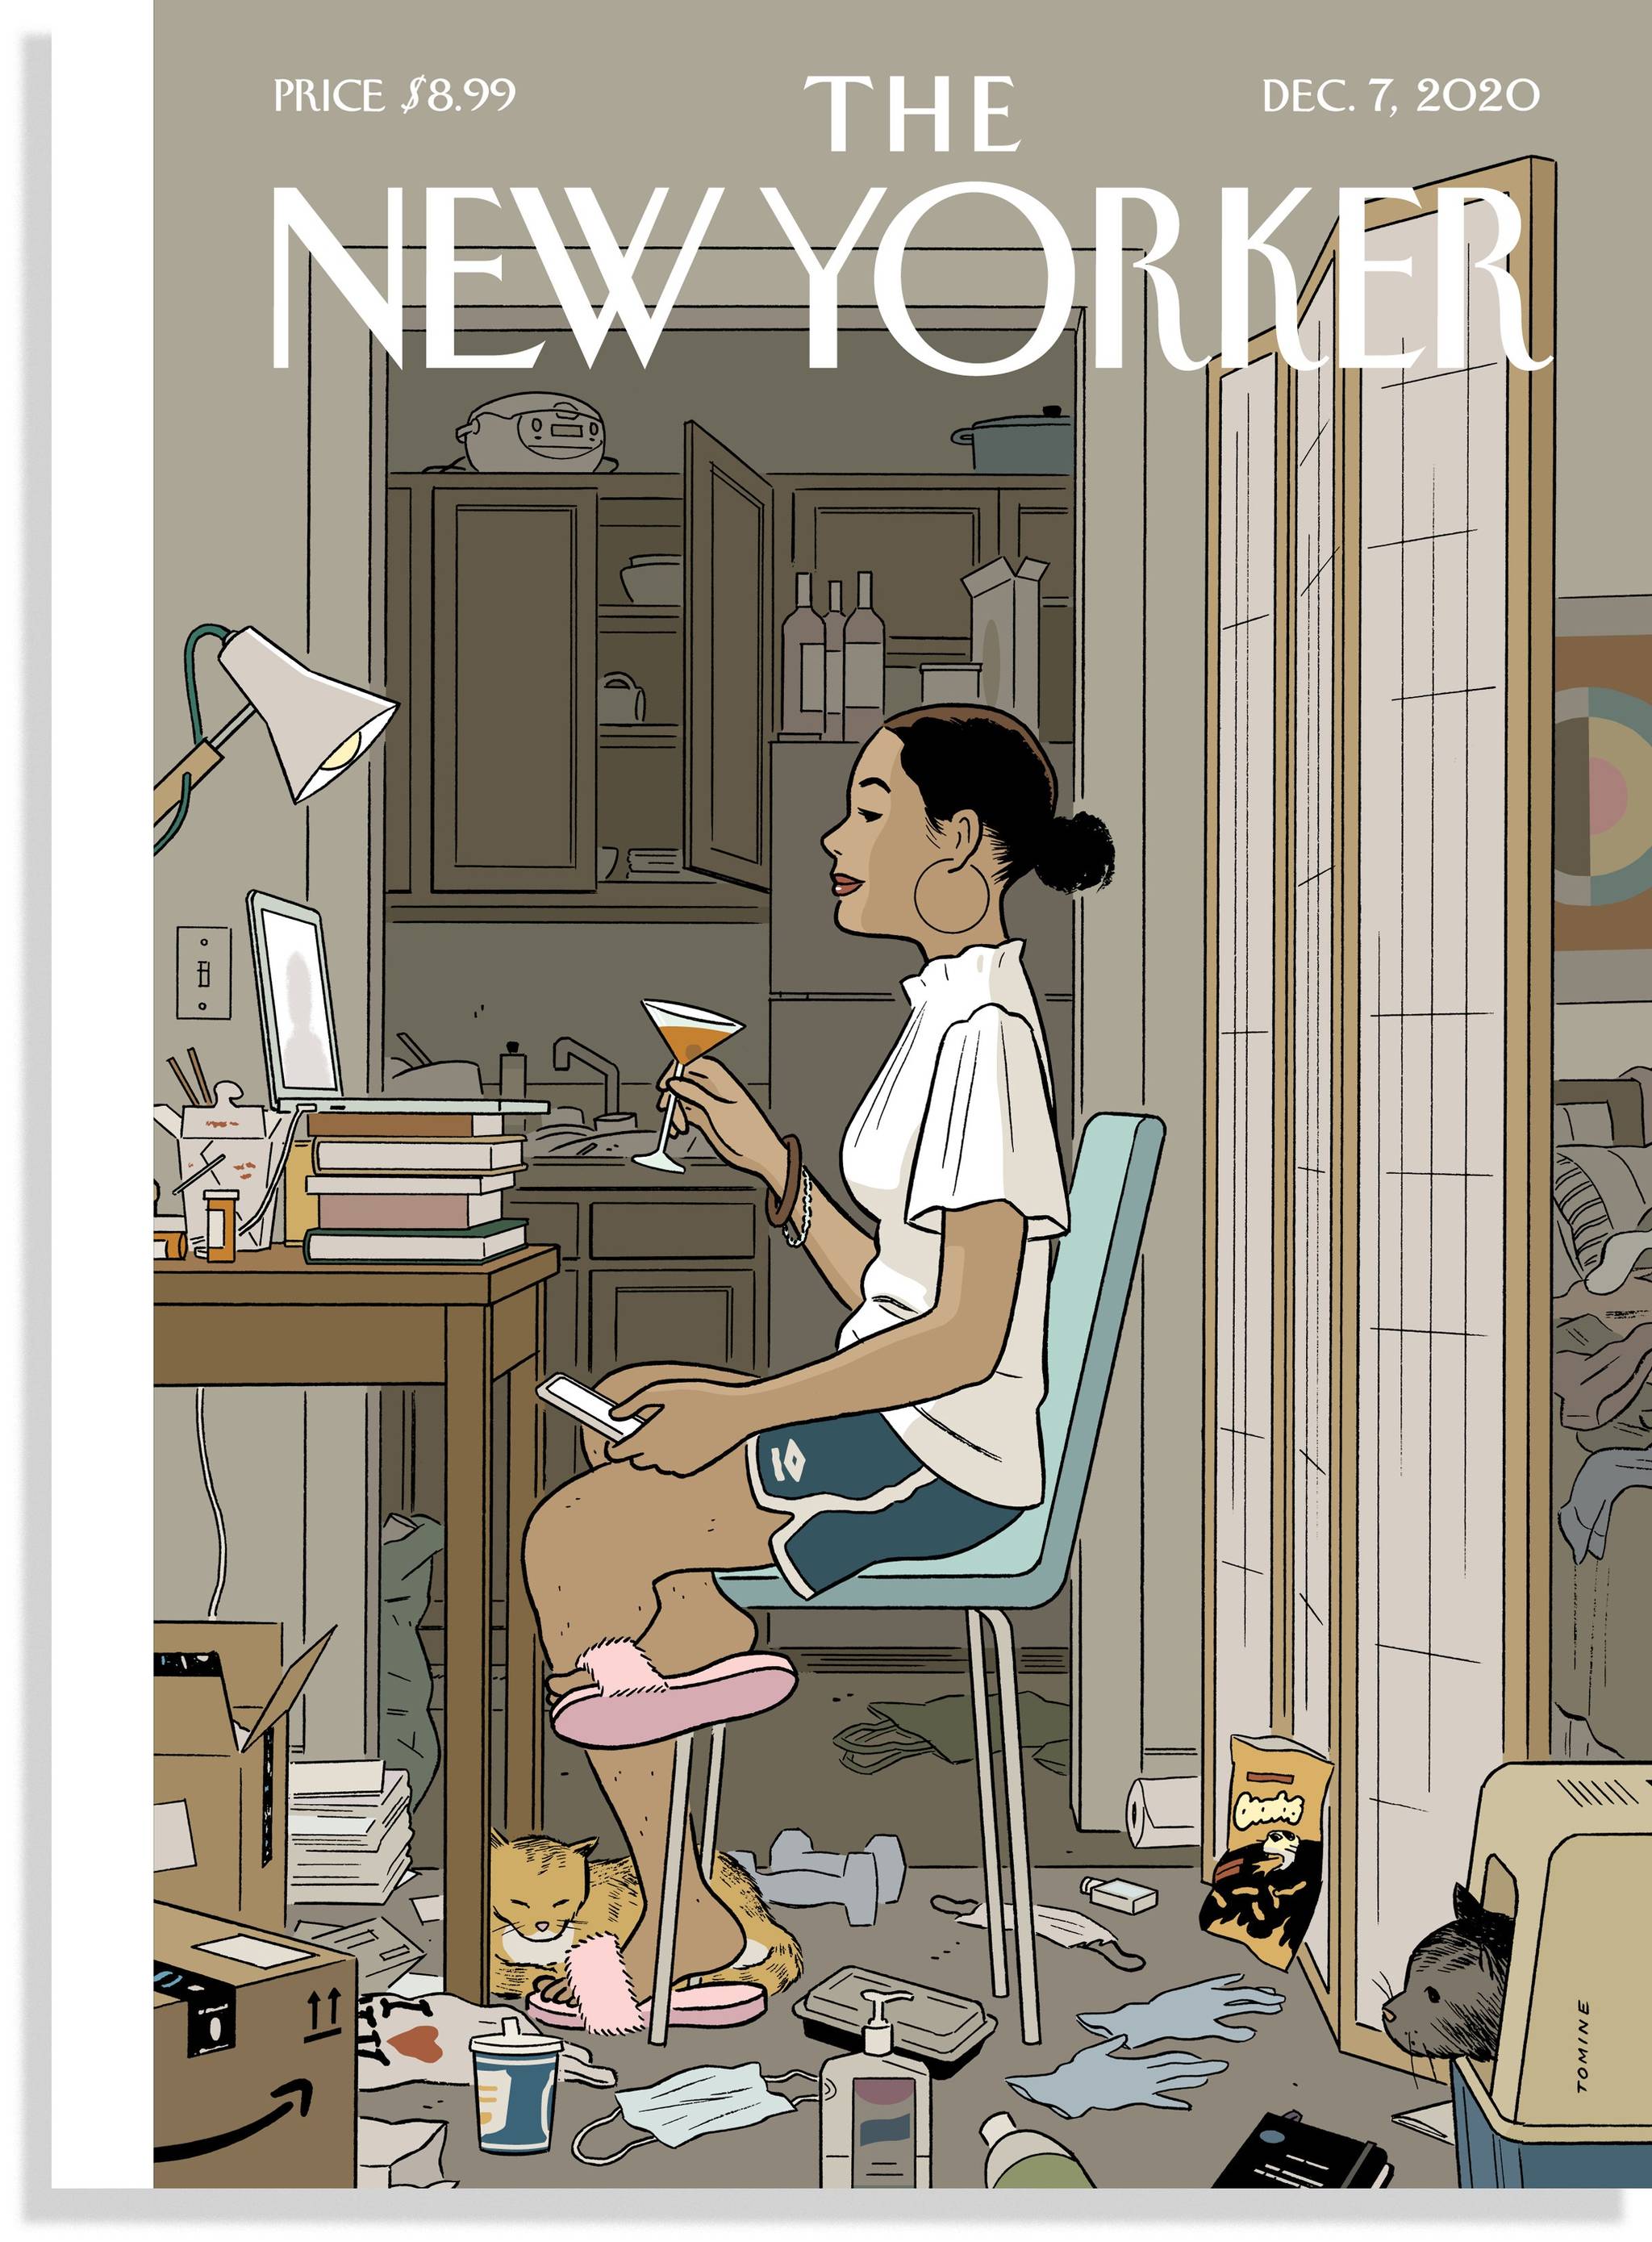 La portada del "New Yorker" ilustrada por Adrian Tomine, titulada "Love life" (vida amorosa), a la que hace referencia Ana Iris Simón en la entrevista.